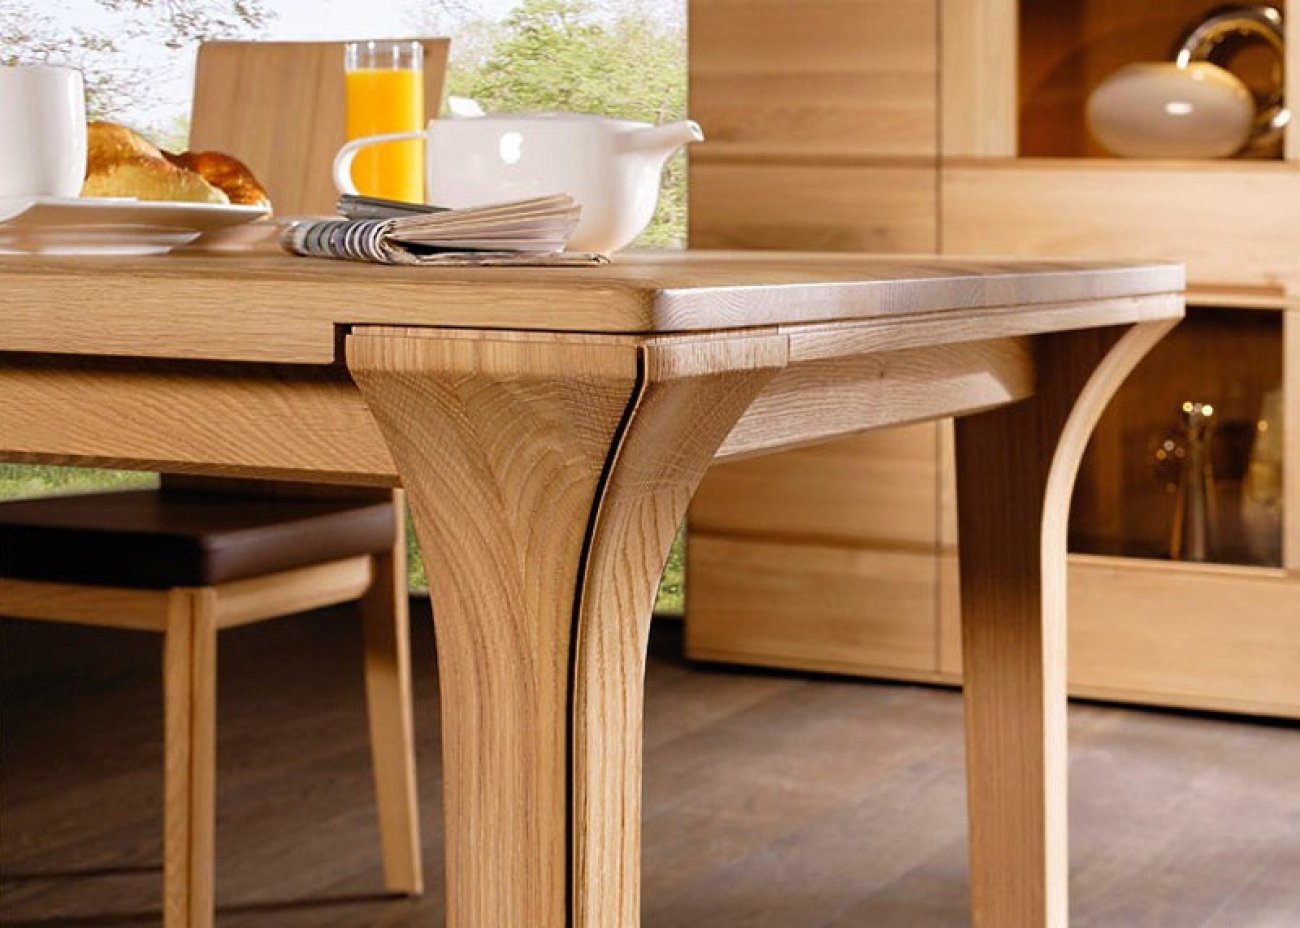 Купить стол готовый. Красивый деревянный стол. Массивный деревянный стол. Столик на кухню. Столик из дерева.